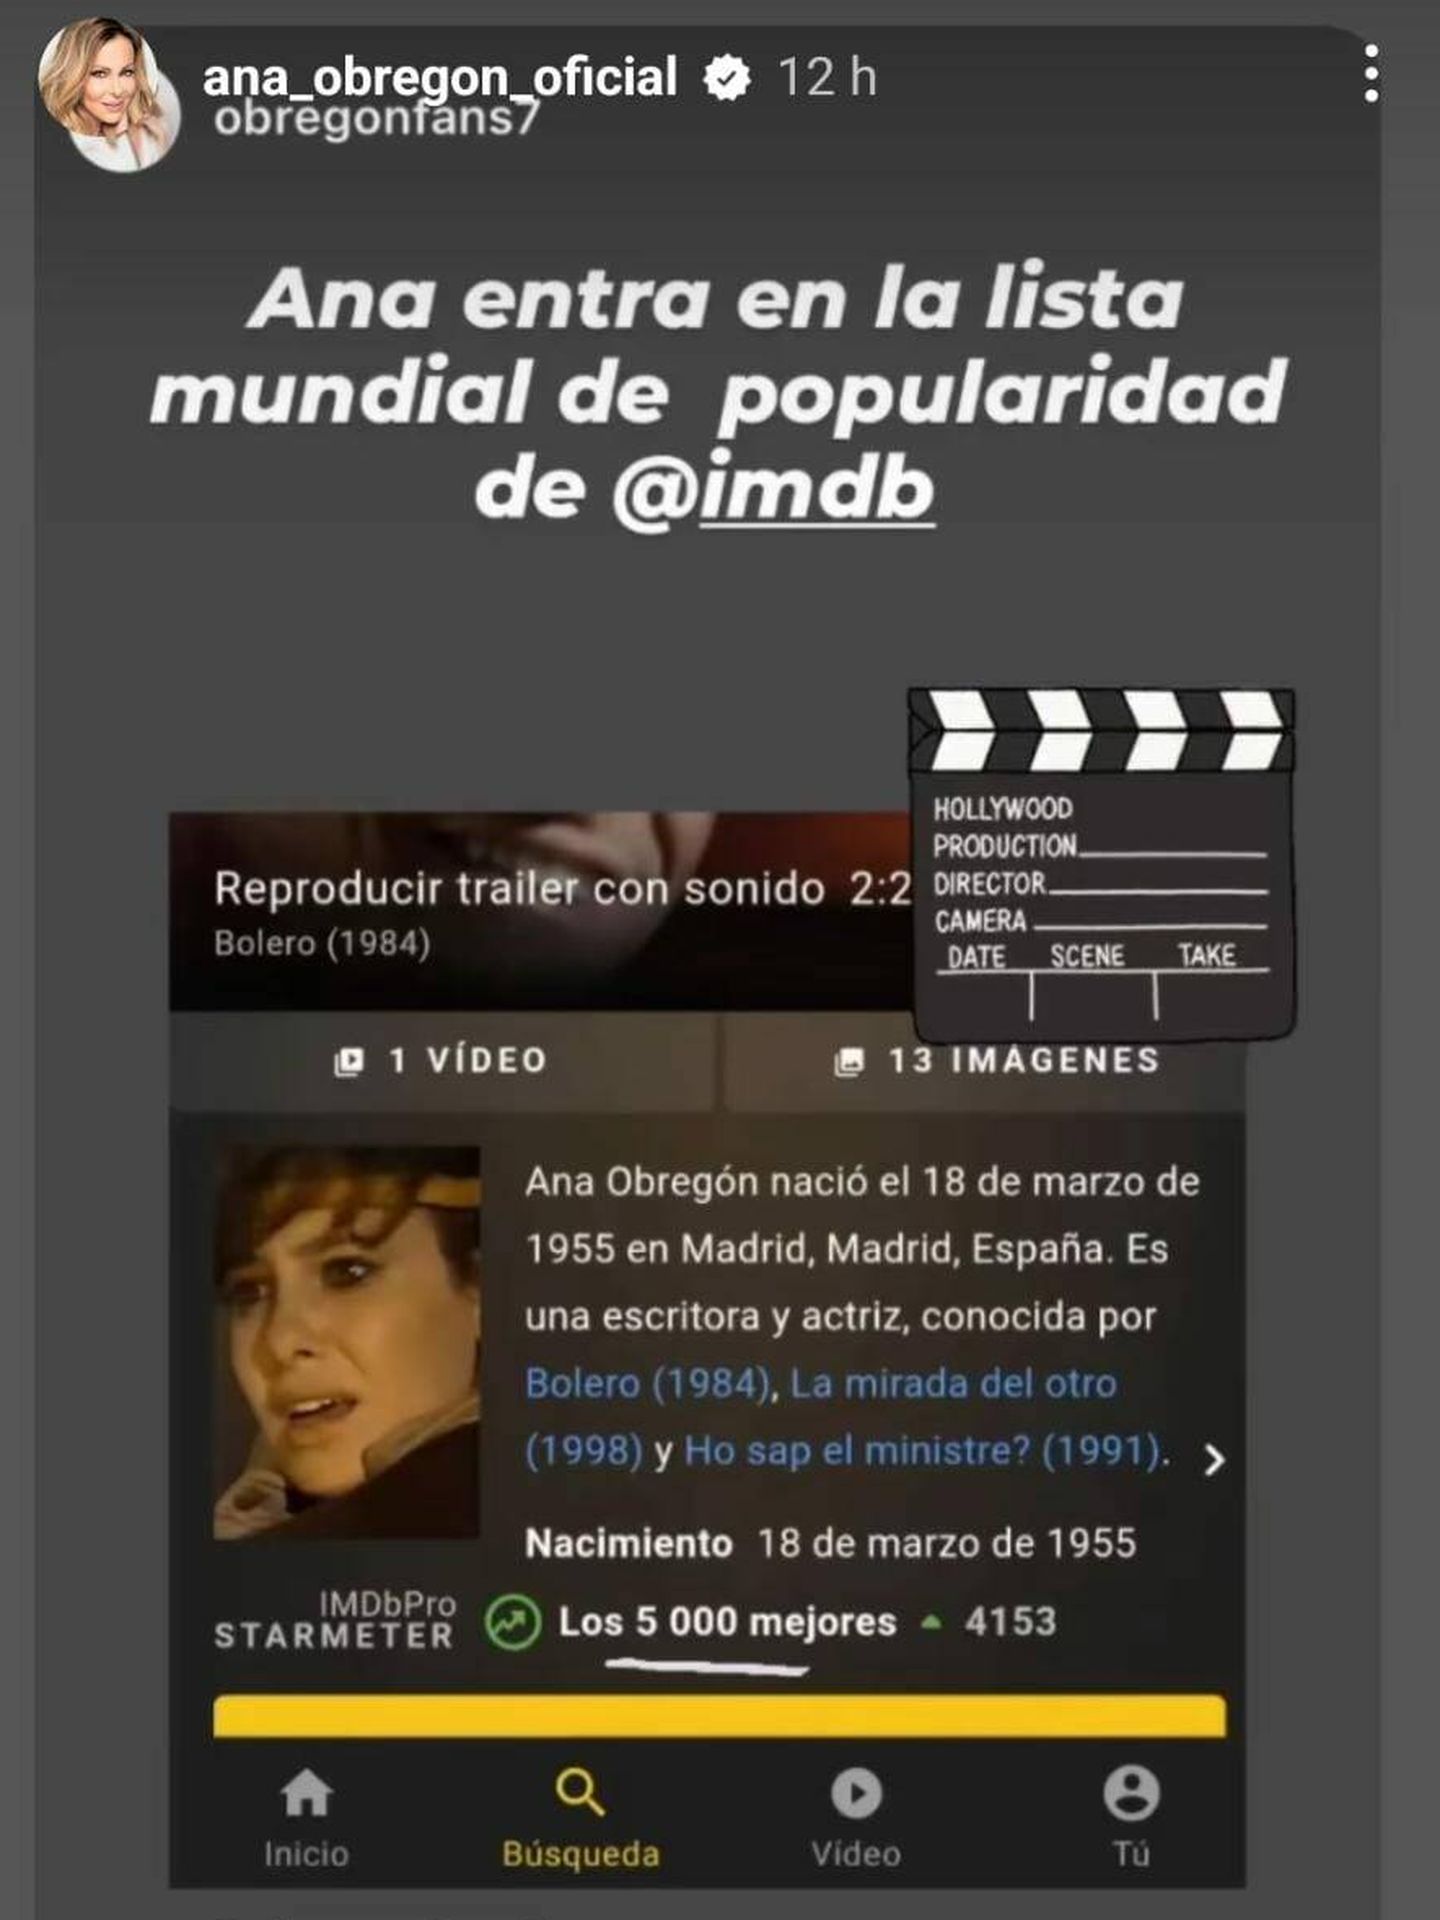 Ana Obregón ha compartido en sus stories la noticia de su popularidad. (Instagram/@ana_obregon_oficial)